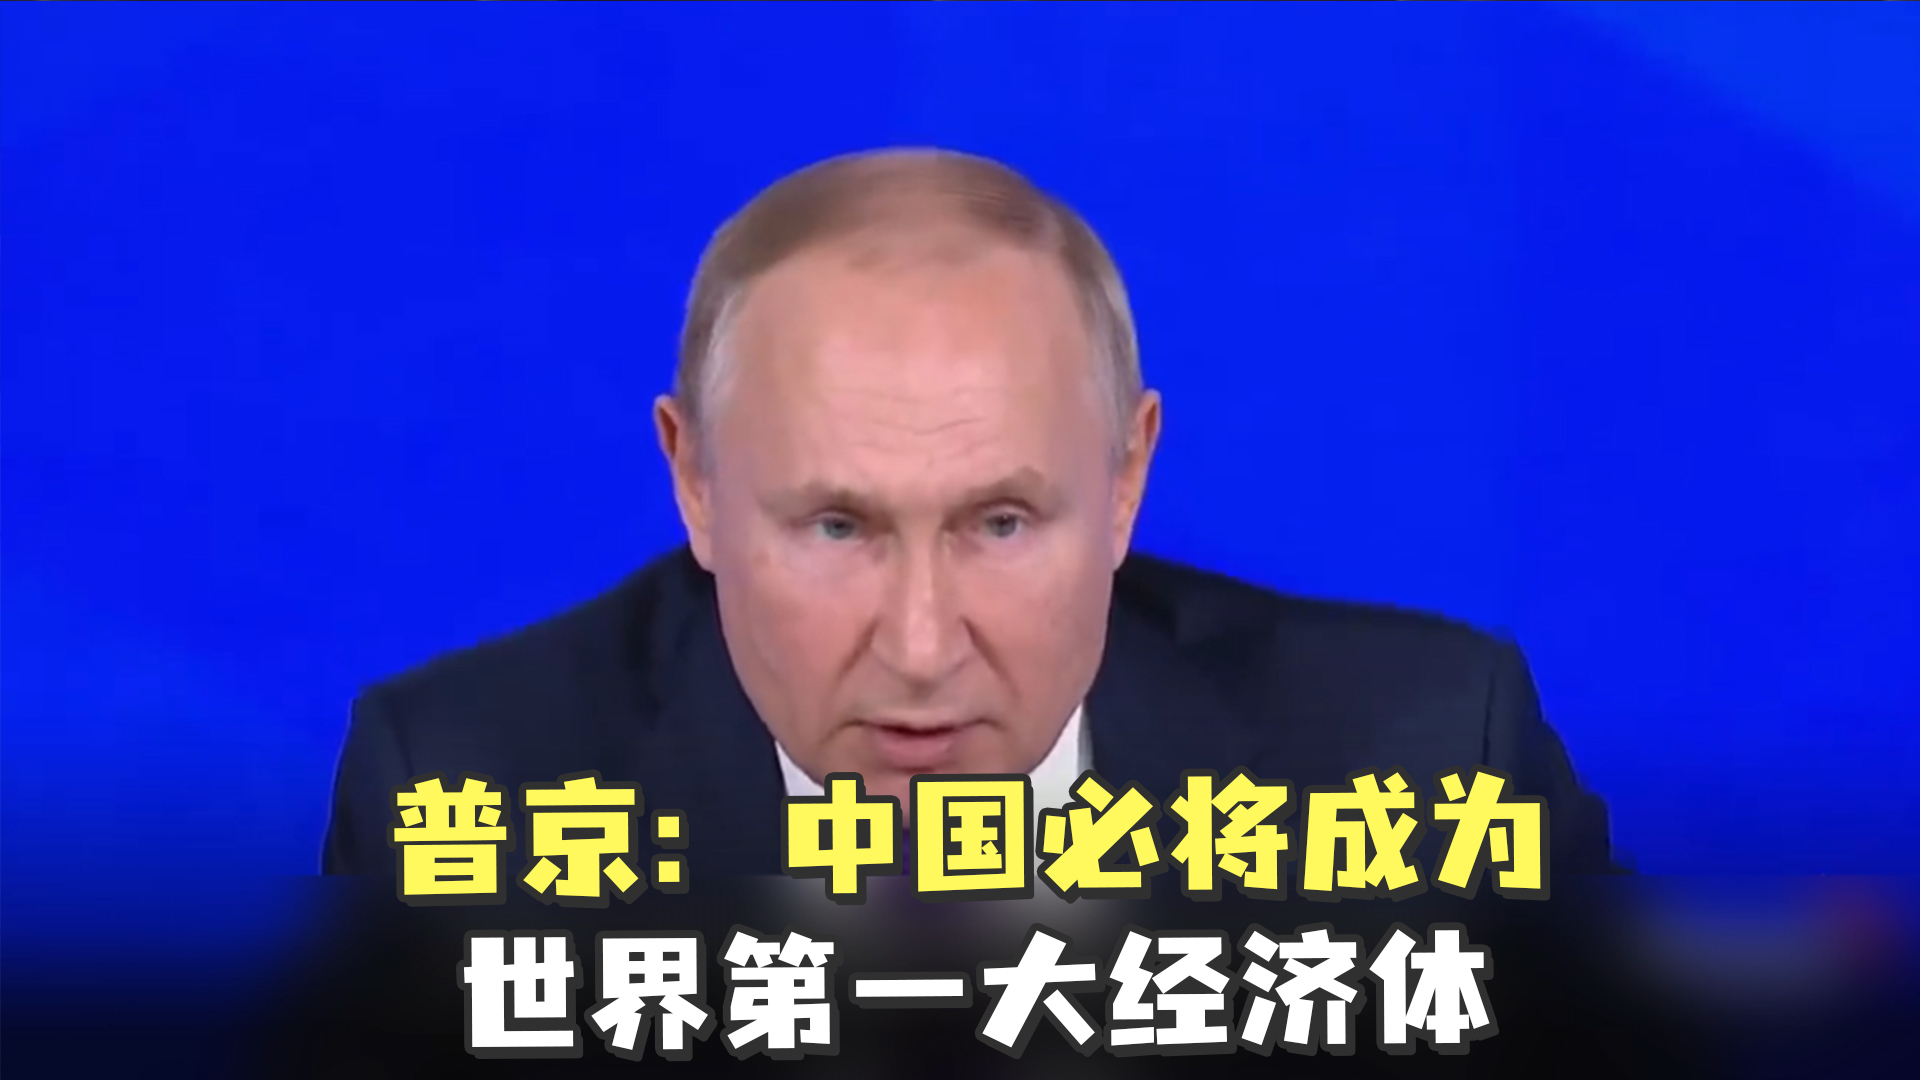 习近平与普京正式会谈 中俄联合声明吁对话解决乌克兰危机